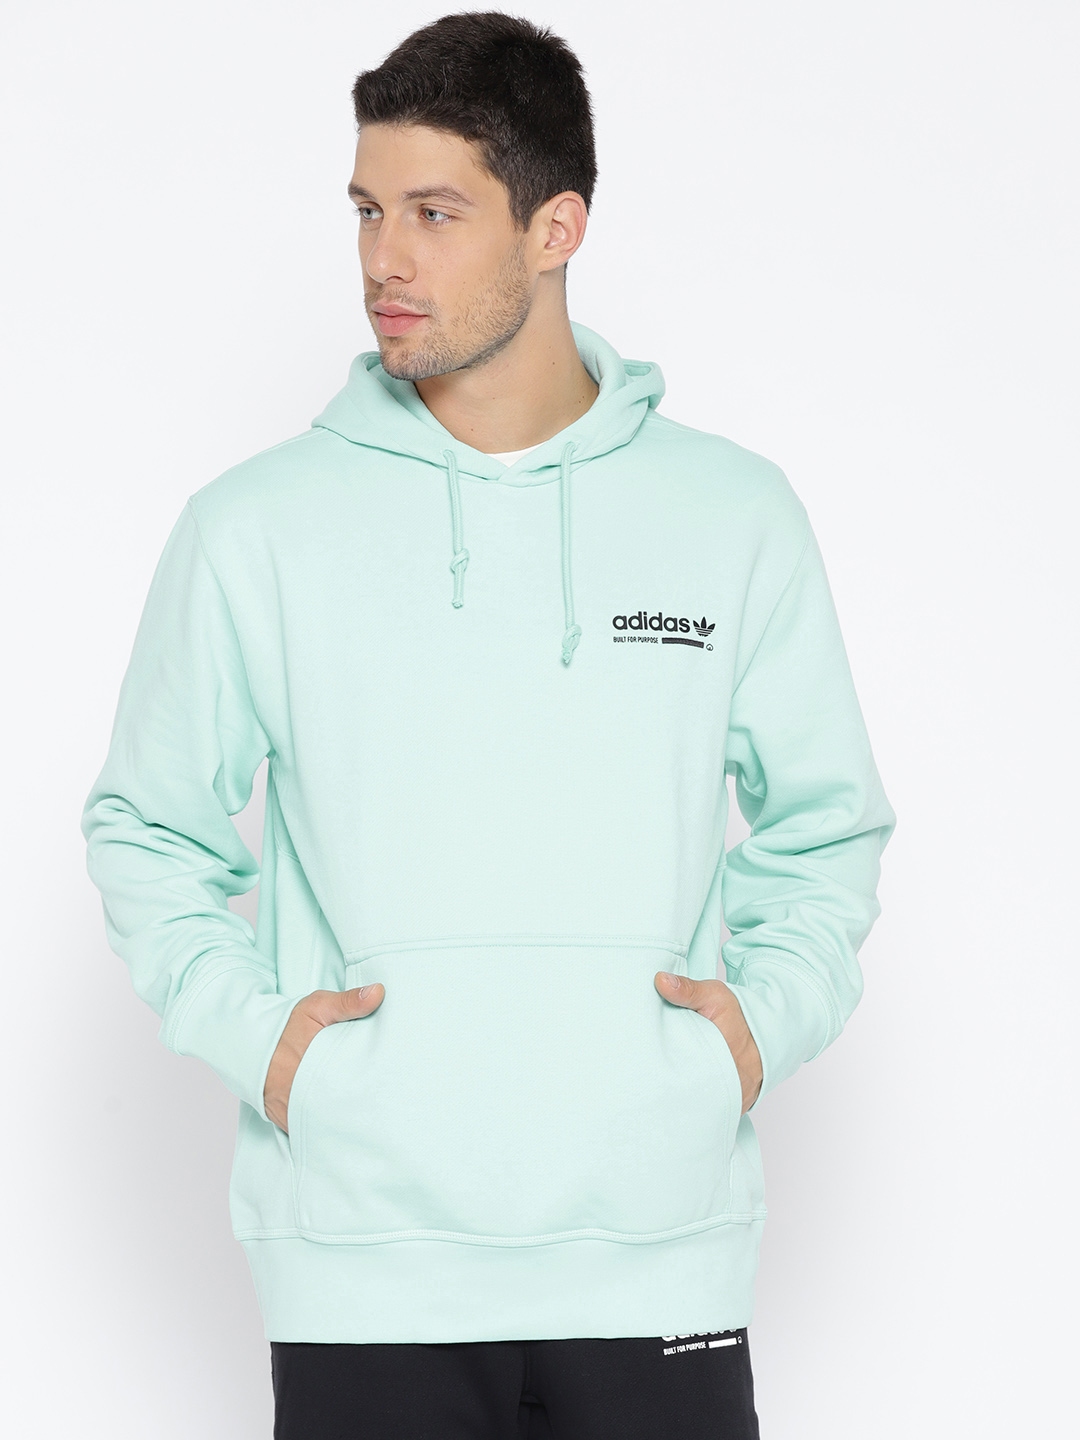 adidas originals sport luxe half zip hoodie